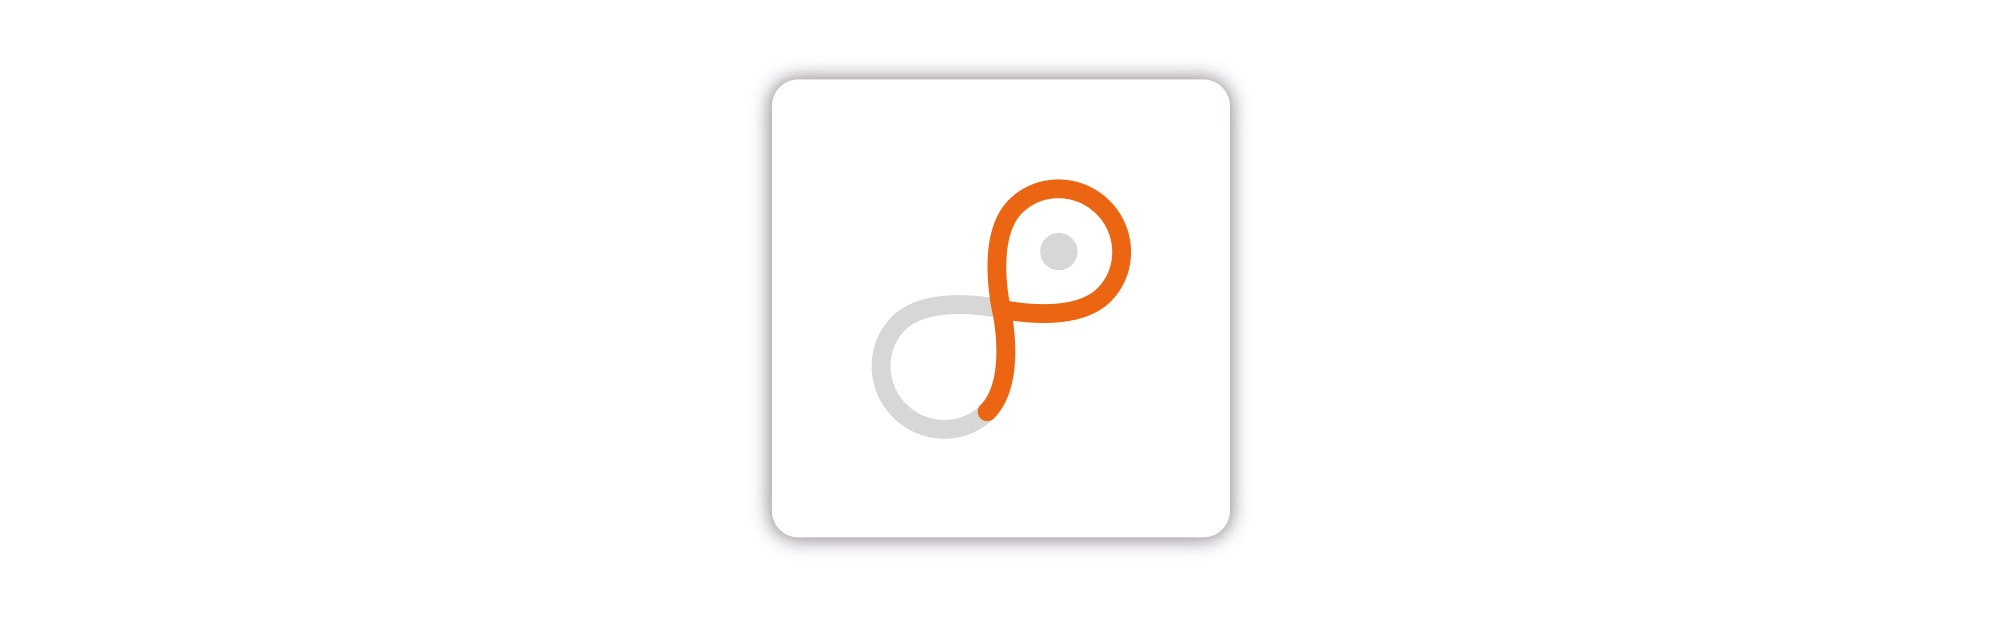 „p wie public“: Zusätzlich ist das Wort „Public“ im Logo integriert mit dem Buchstaben „p“.